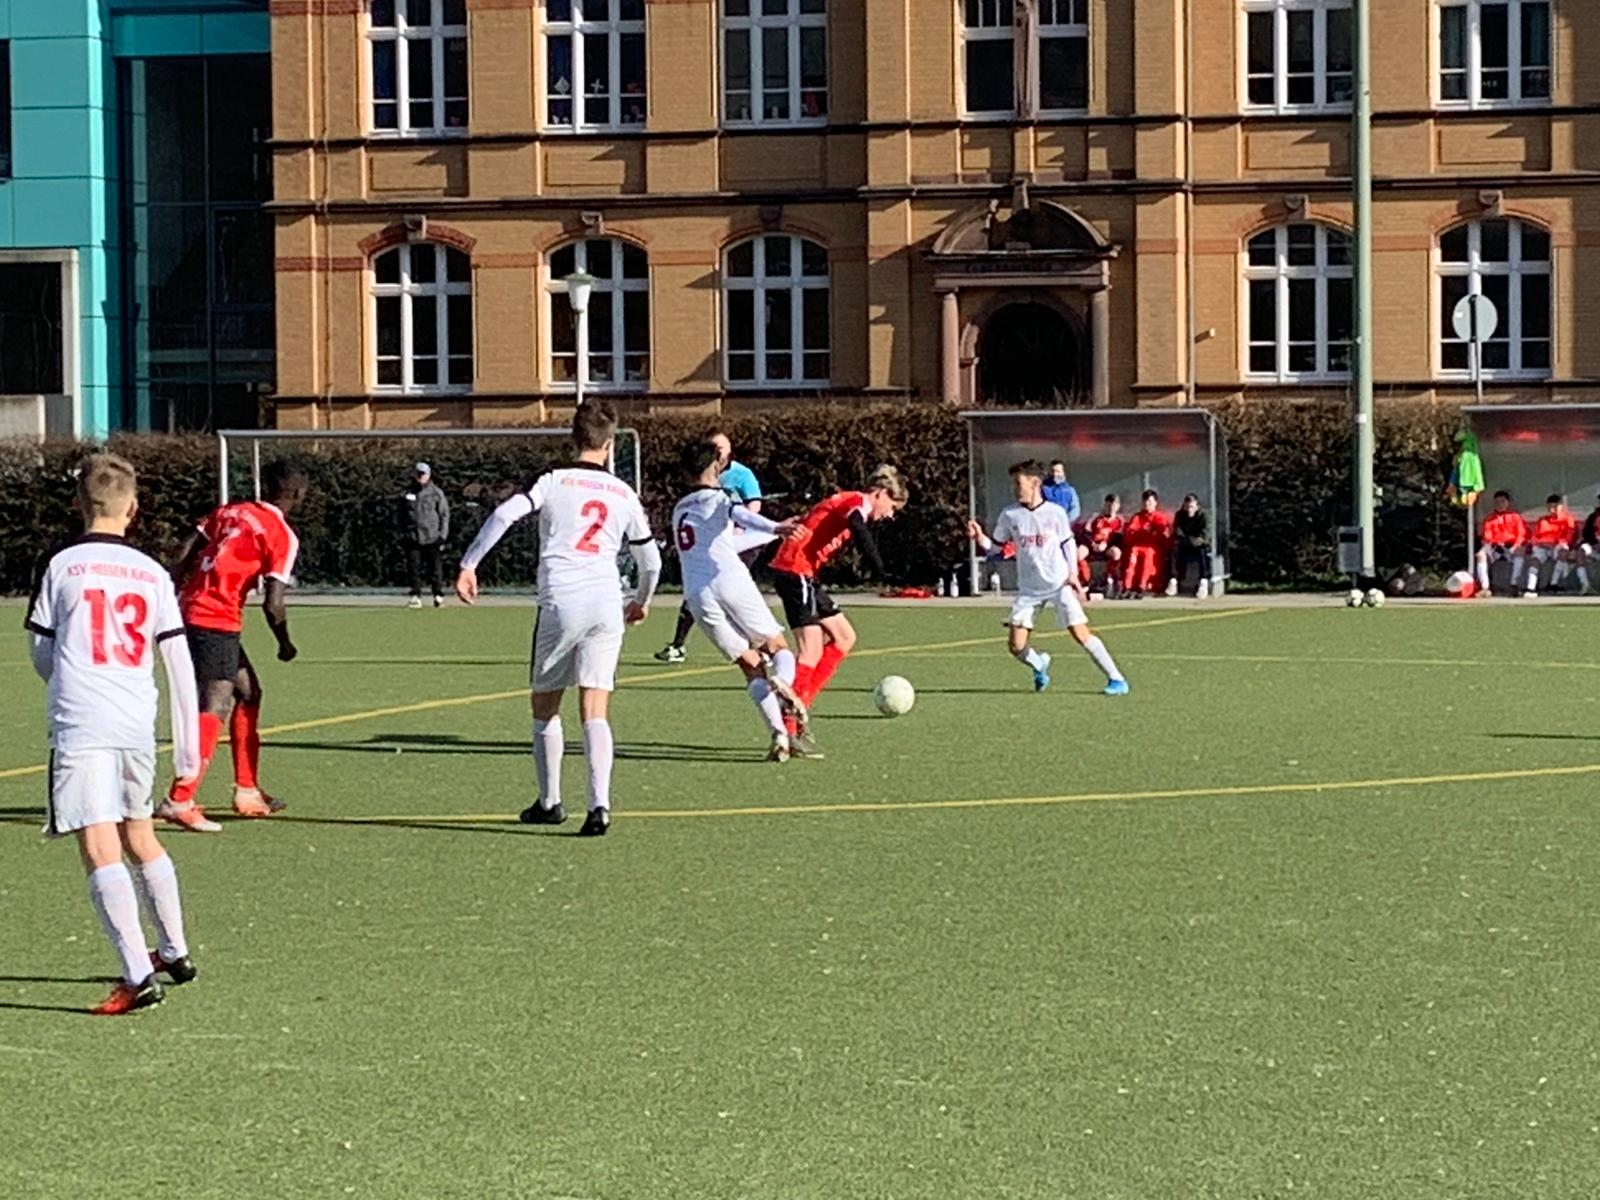 VfL Kassel - U15